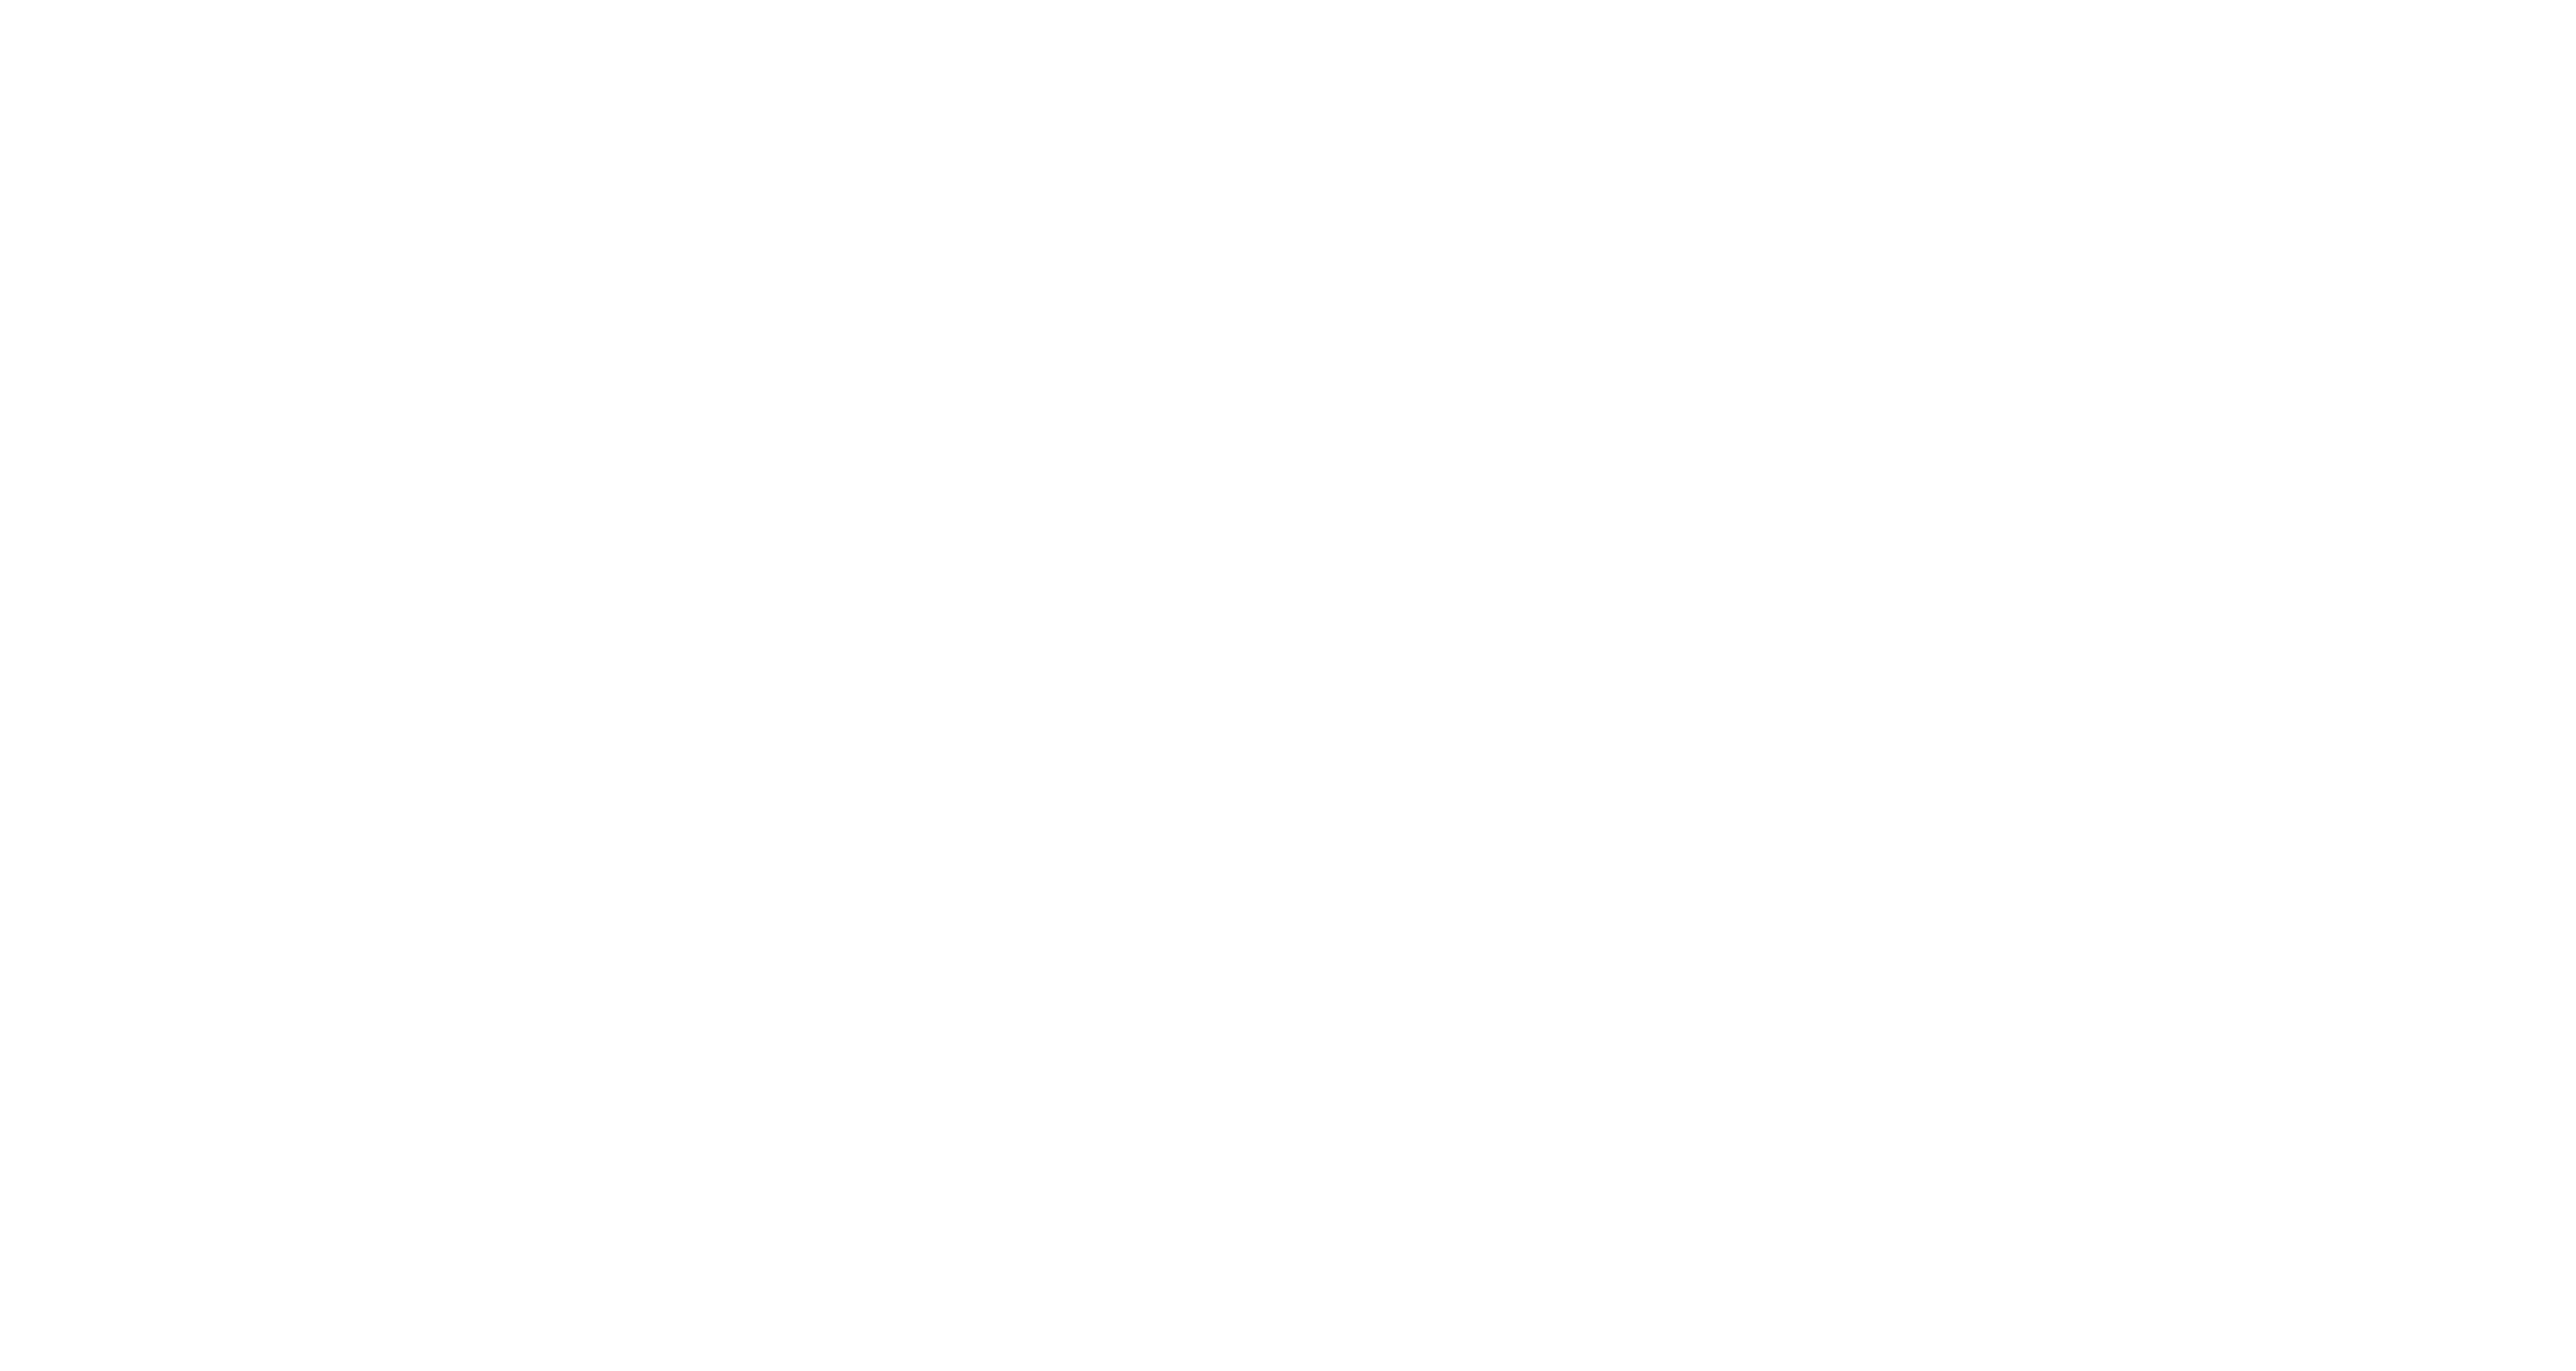 Mindfulness.com